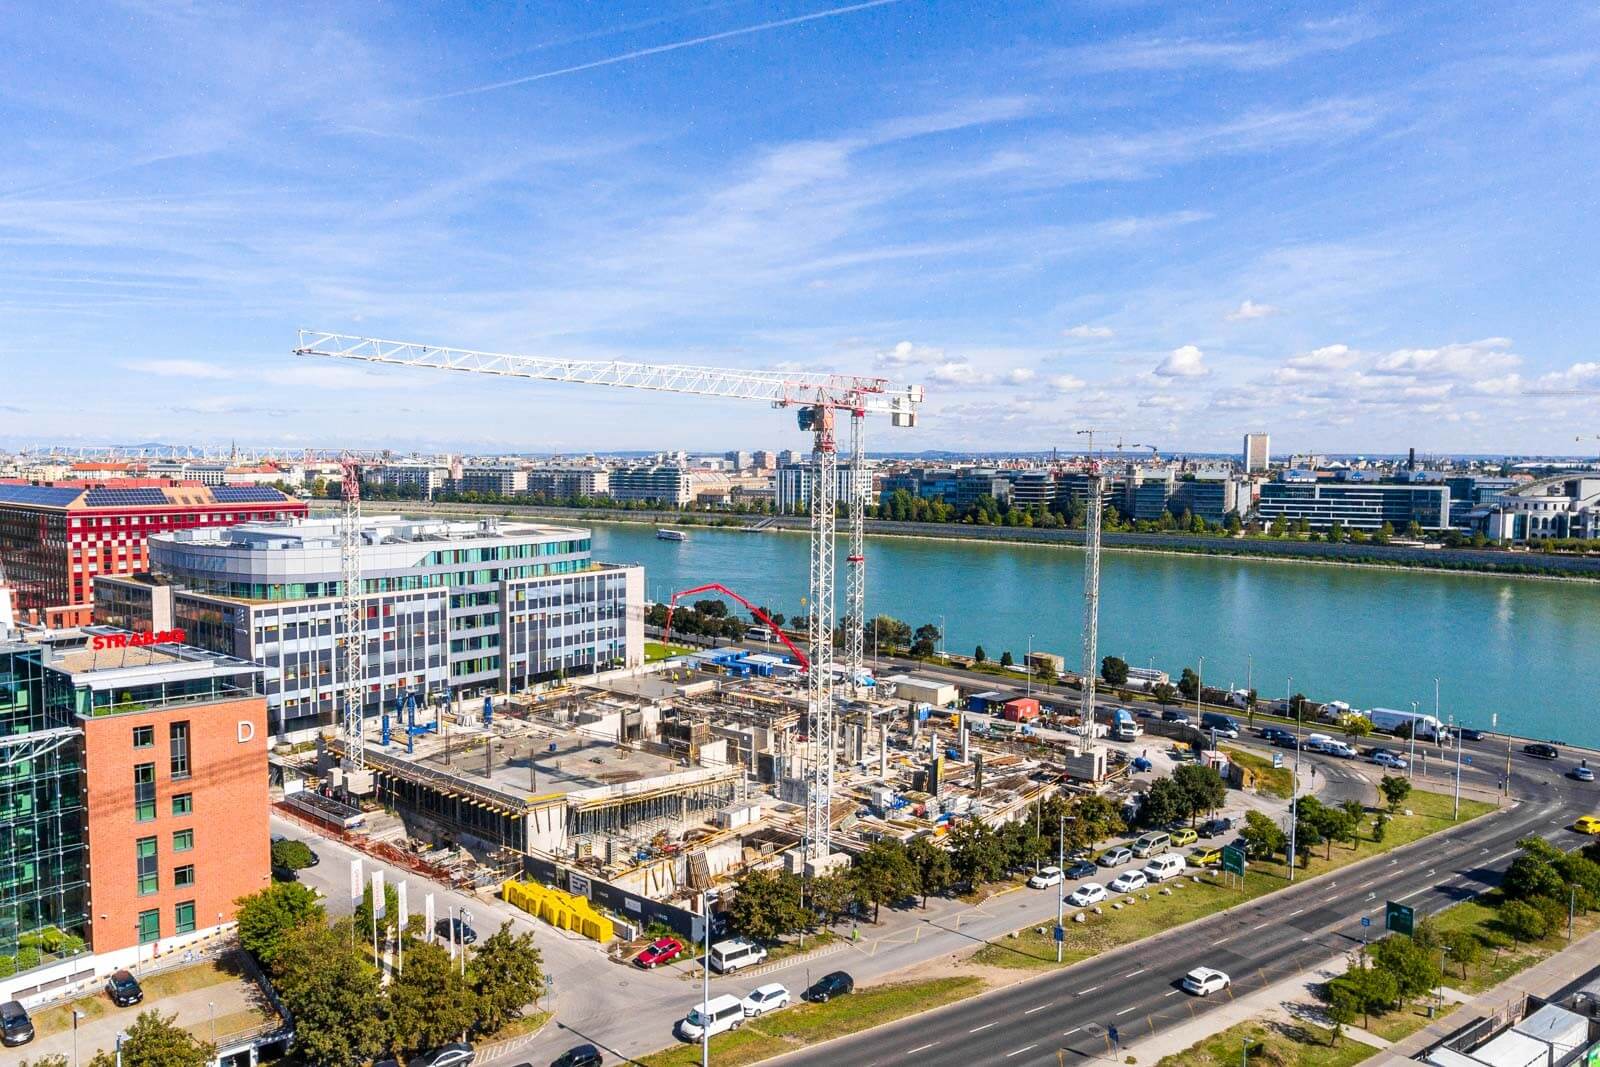 Néhány hónapon belül szerkezetkész a Siemens-evosoft szoftverfejlesztő vállalat új székháza